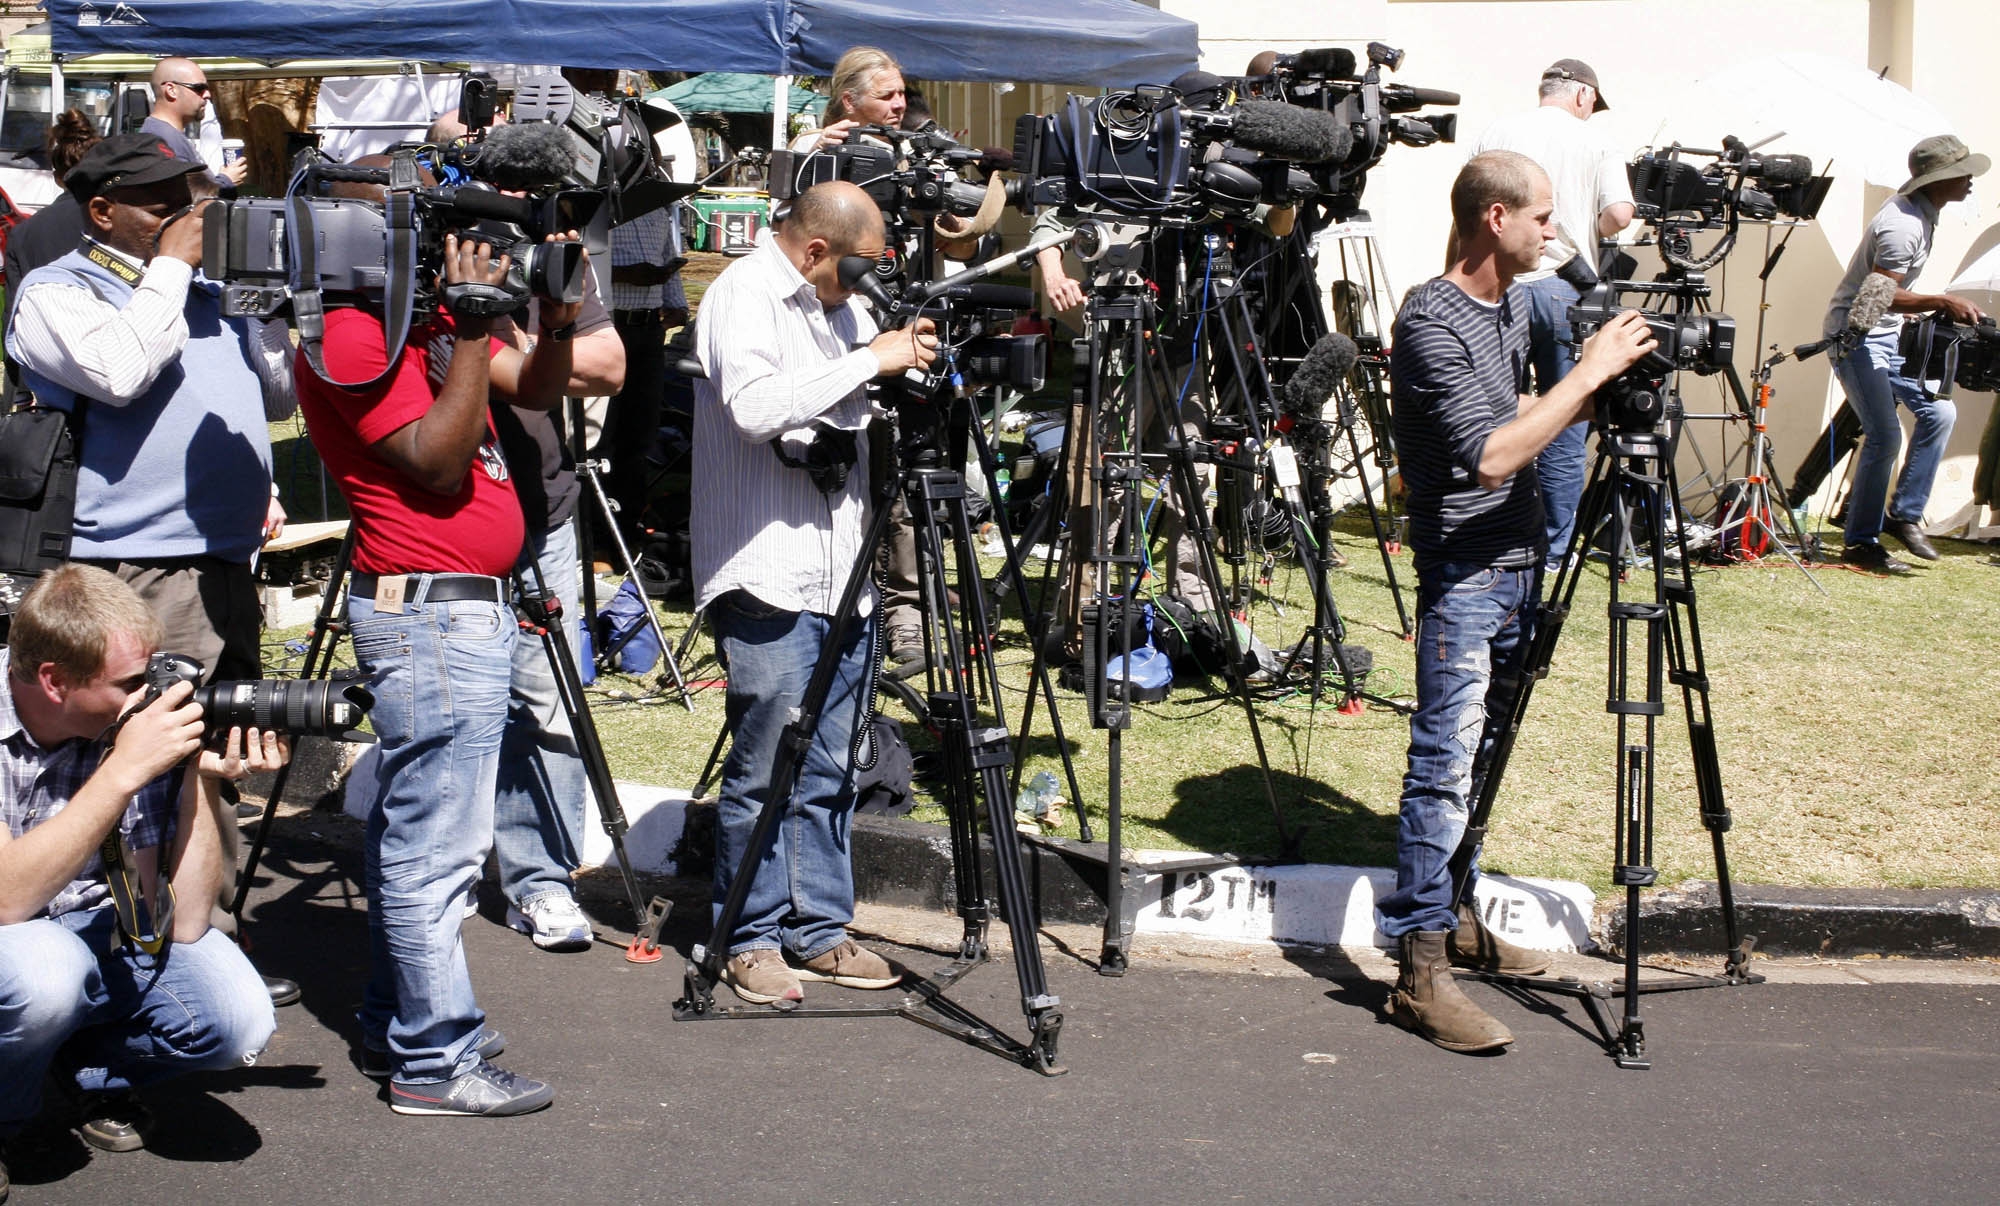 kemampuan dalam menggunakan kamera menjadi hal yang penting bagi jurnalis